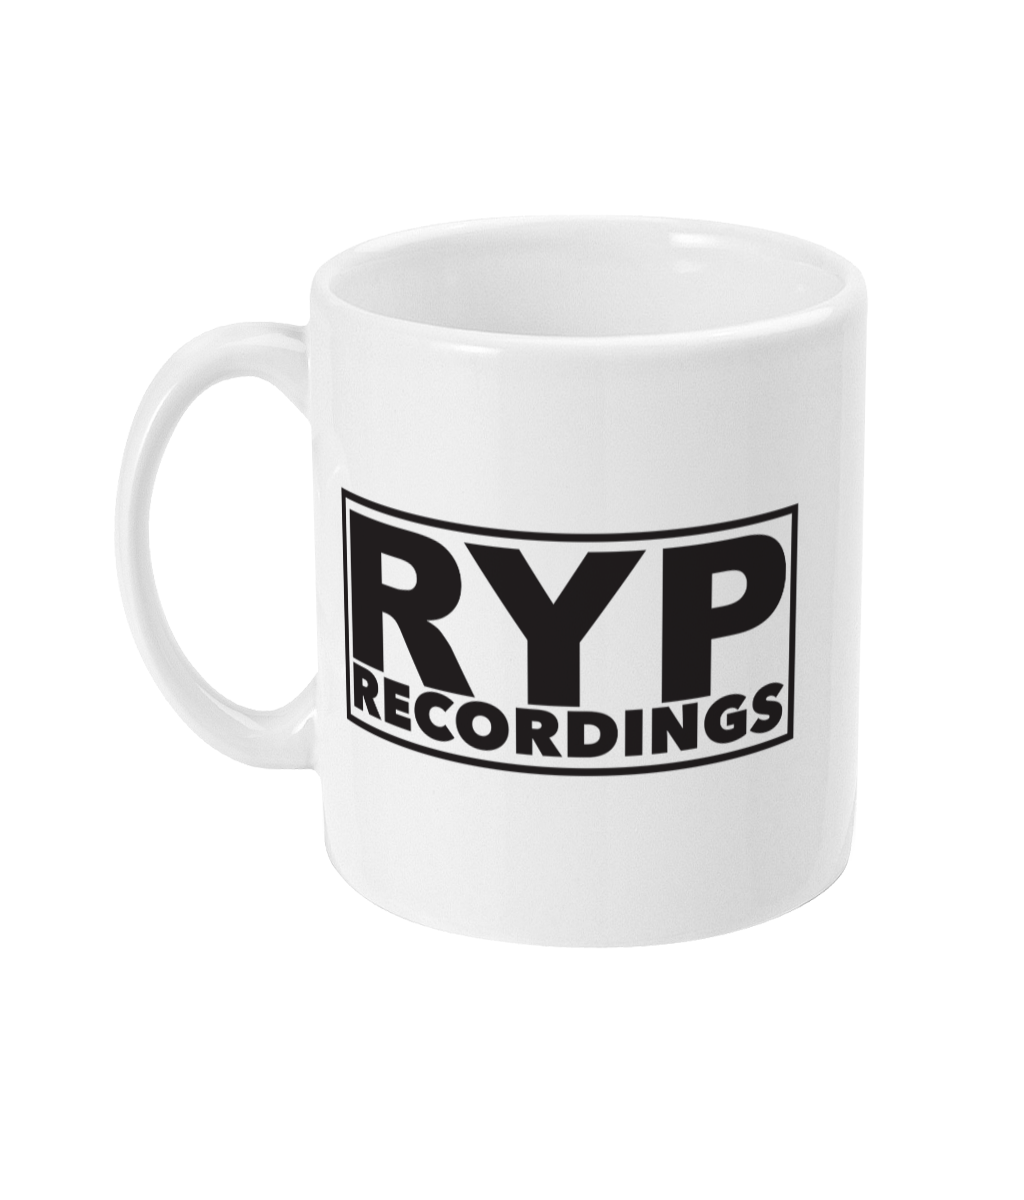 RYP Recordings Mug, 11oz